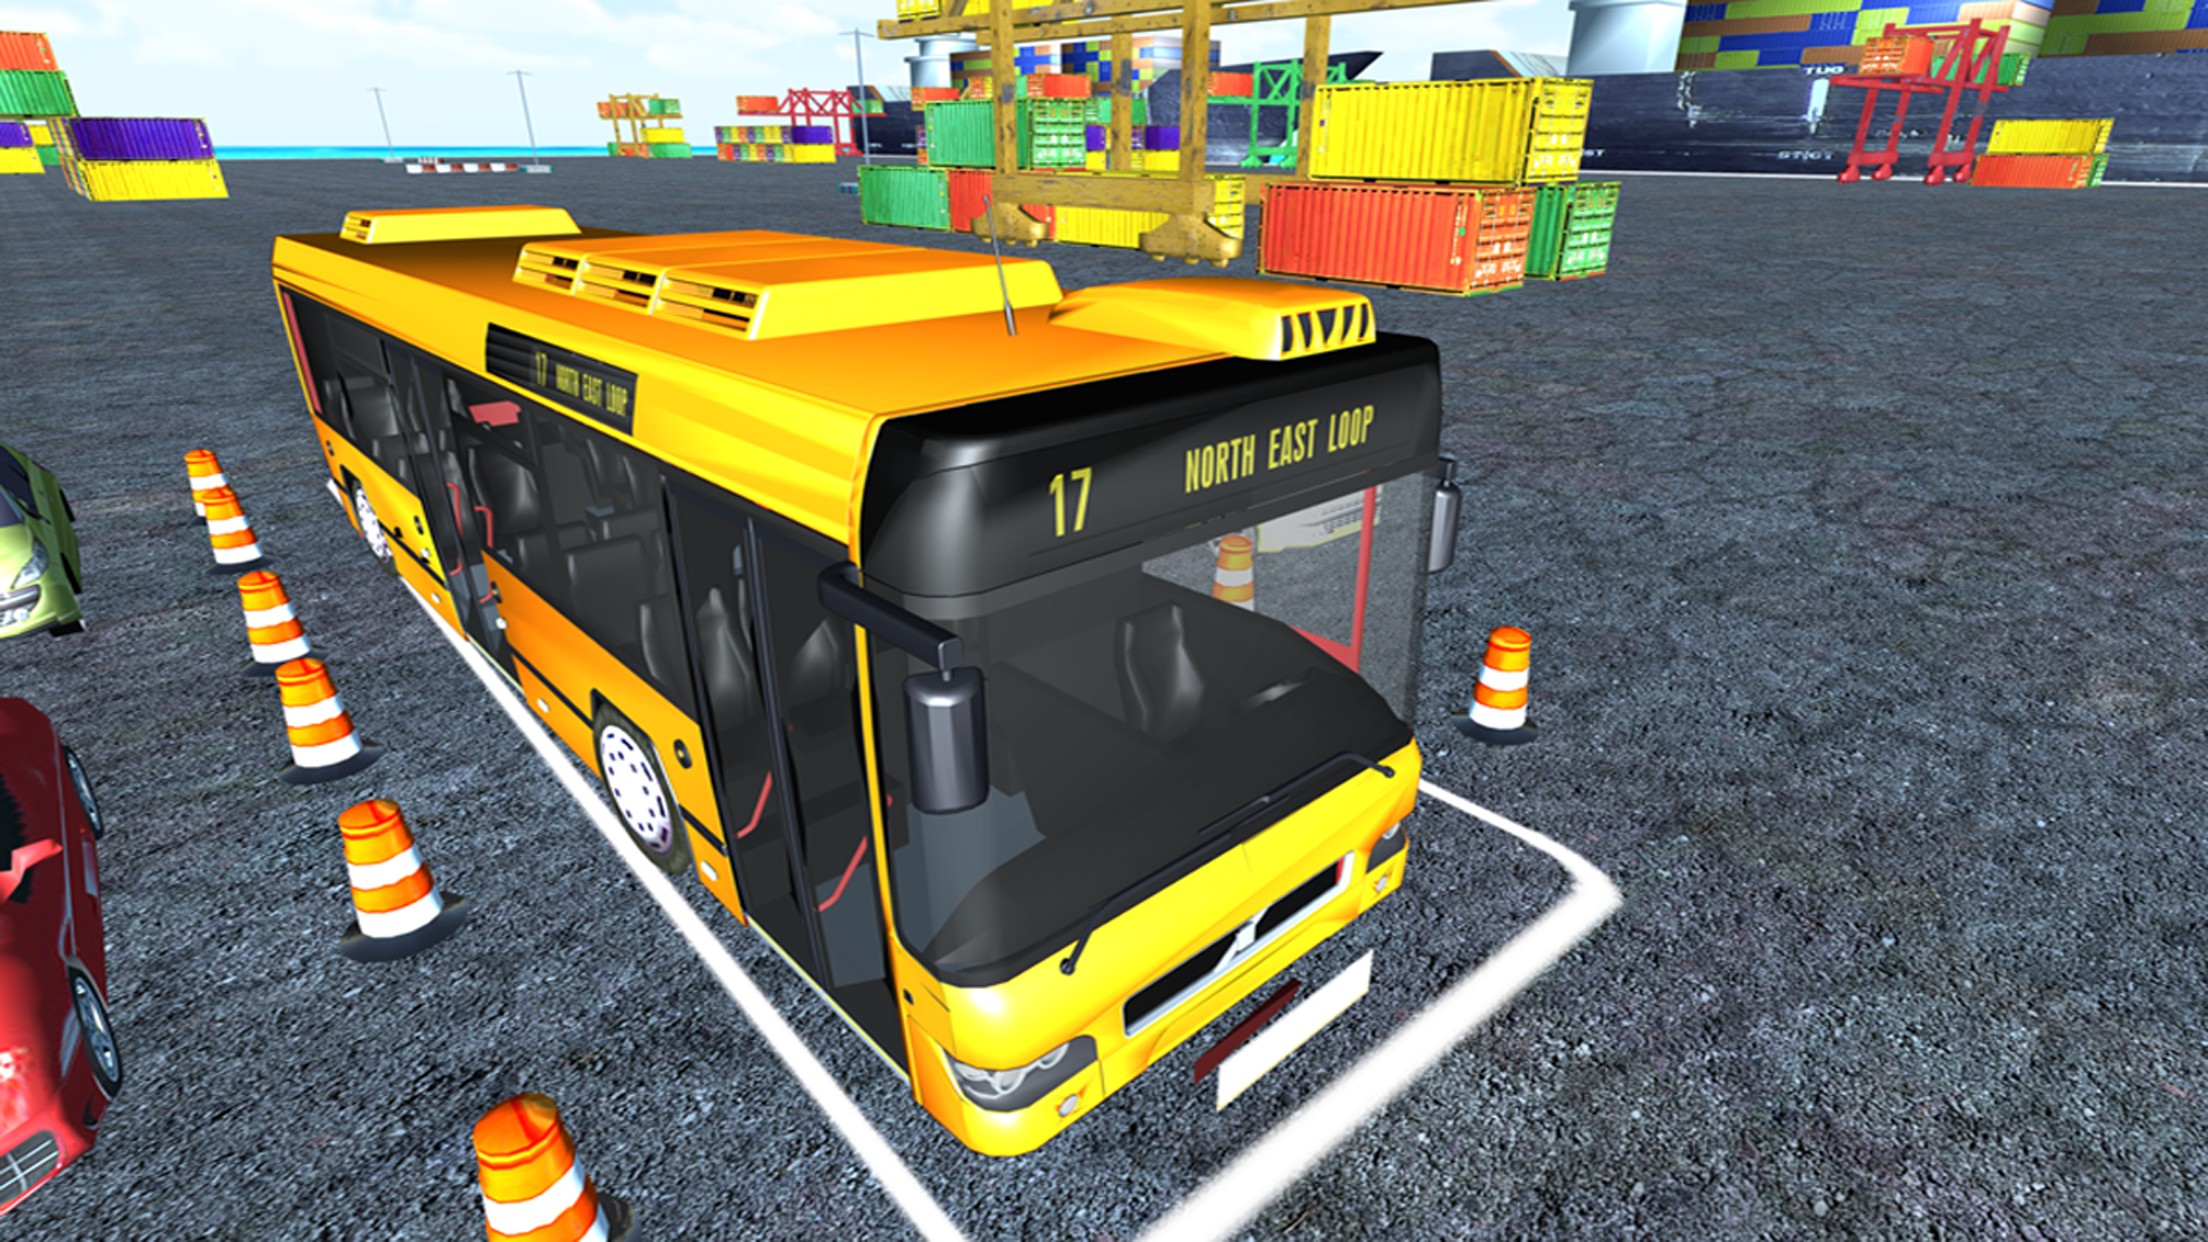 Omnibus Parking simulation